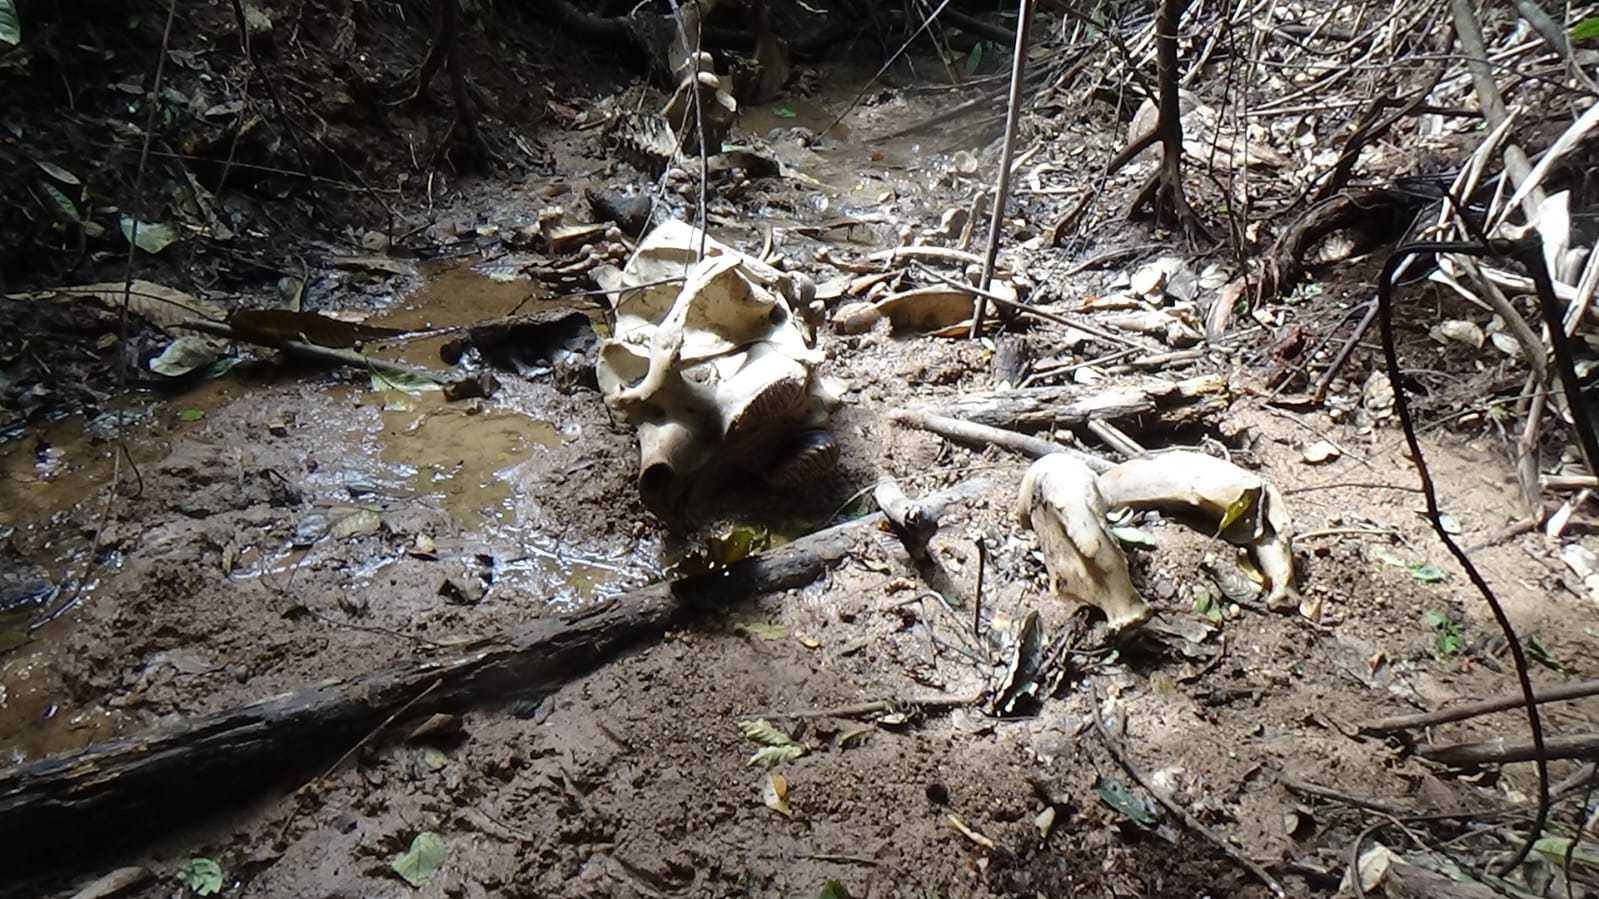 Tengkorak gajah sumatera ditemukan di kawasan hutan produksi. | Foto: Konsorsium Bentang Alam Seblat